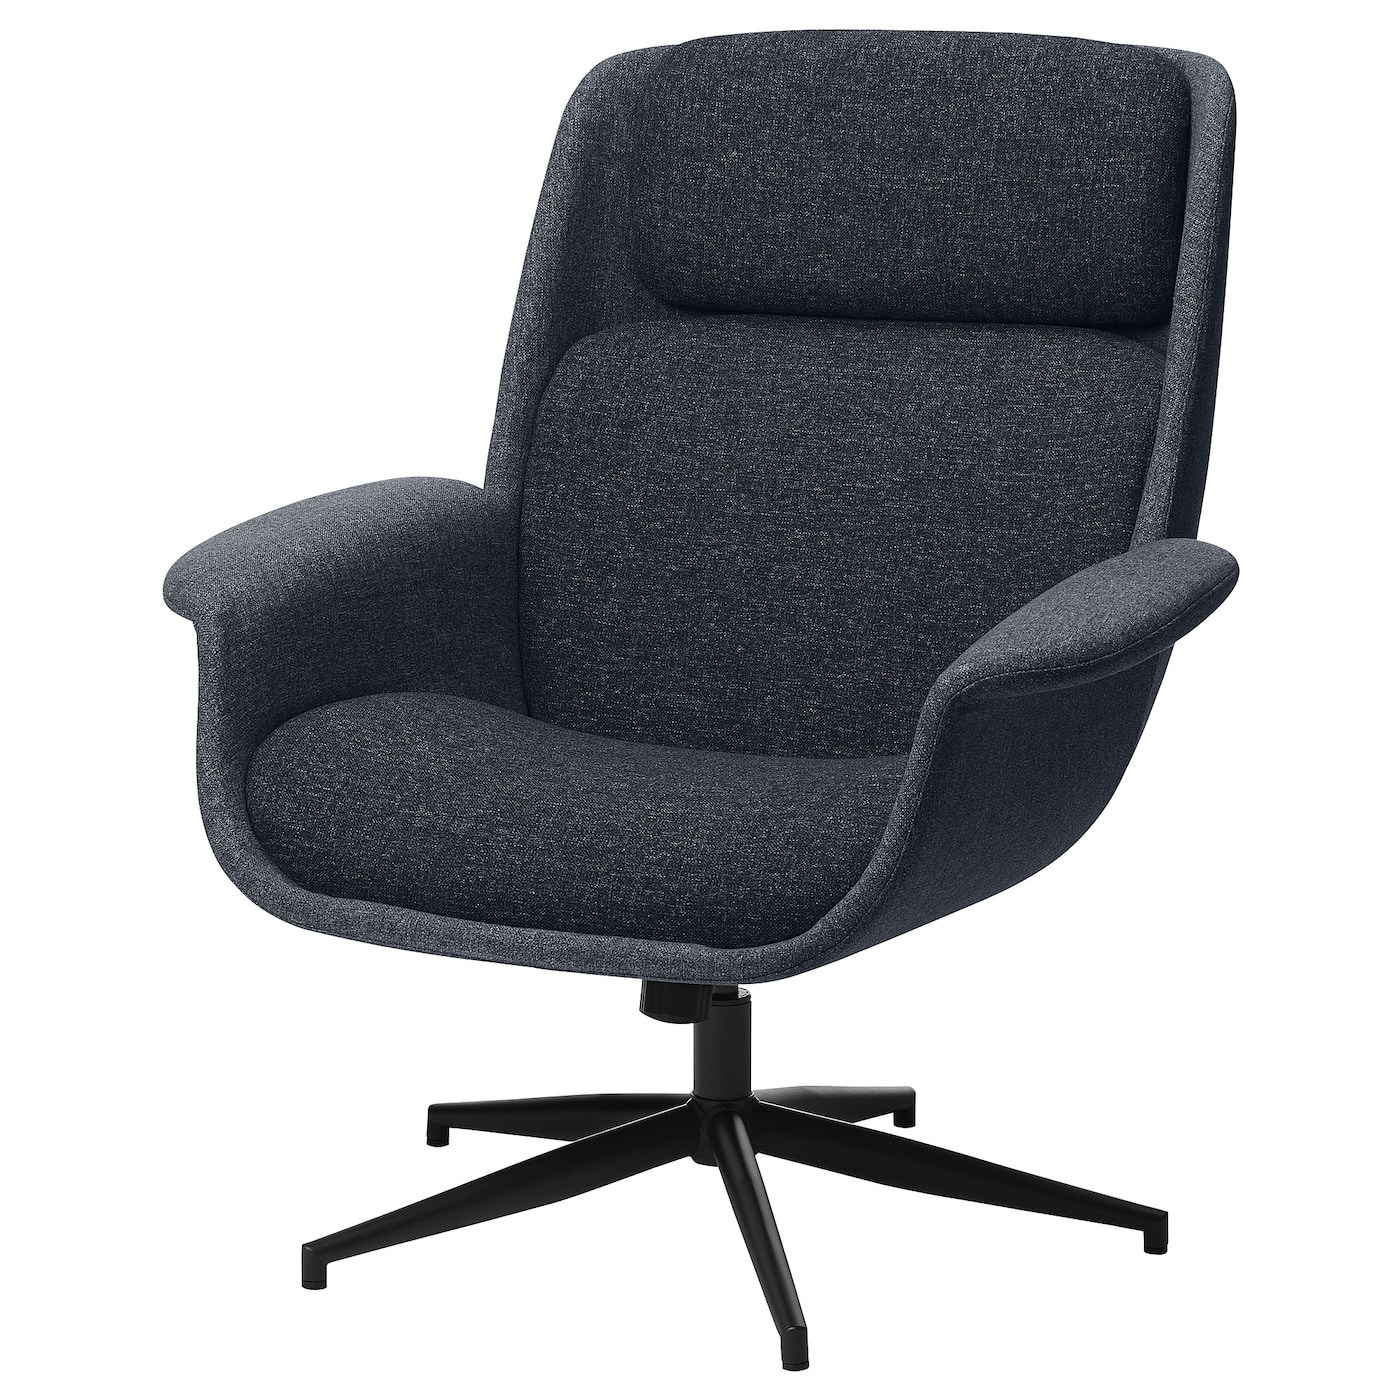 ЭЛЕБИ Вращающееся кресло, Гуннаред средний серый/темно-серый ÄLEBY IKEA компьютерное кресло для дома легкое роскошное кресло удобное офисное кресло с длинным сиденьем для спальни вращающееся кресло